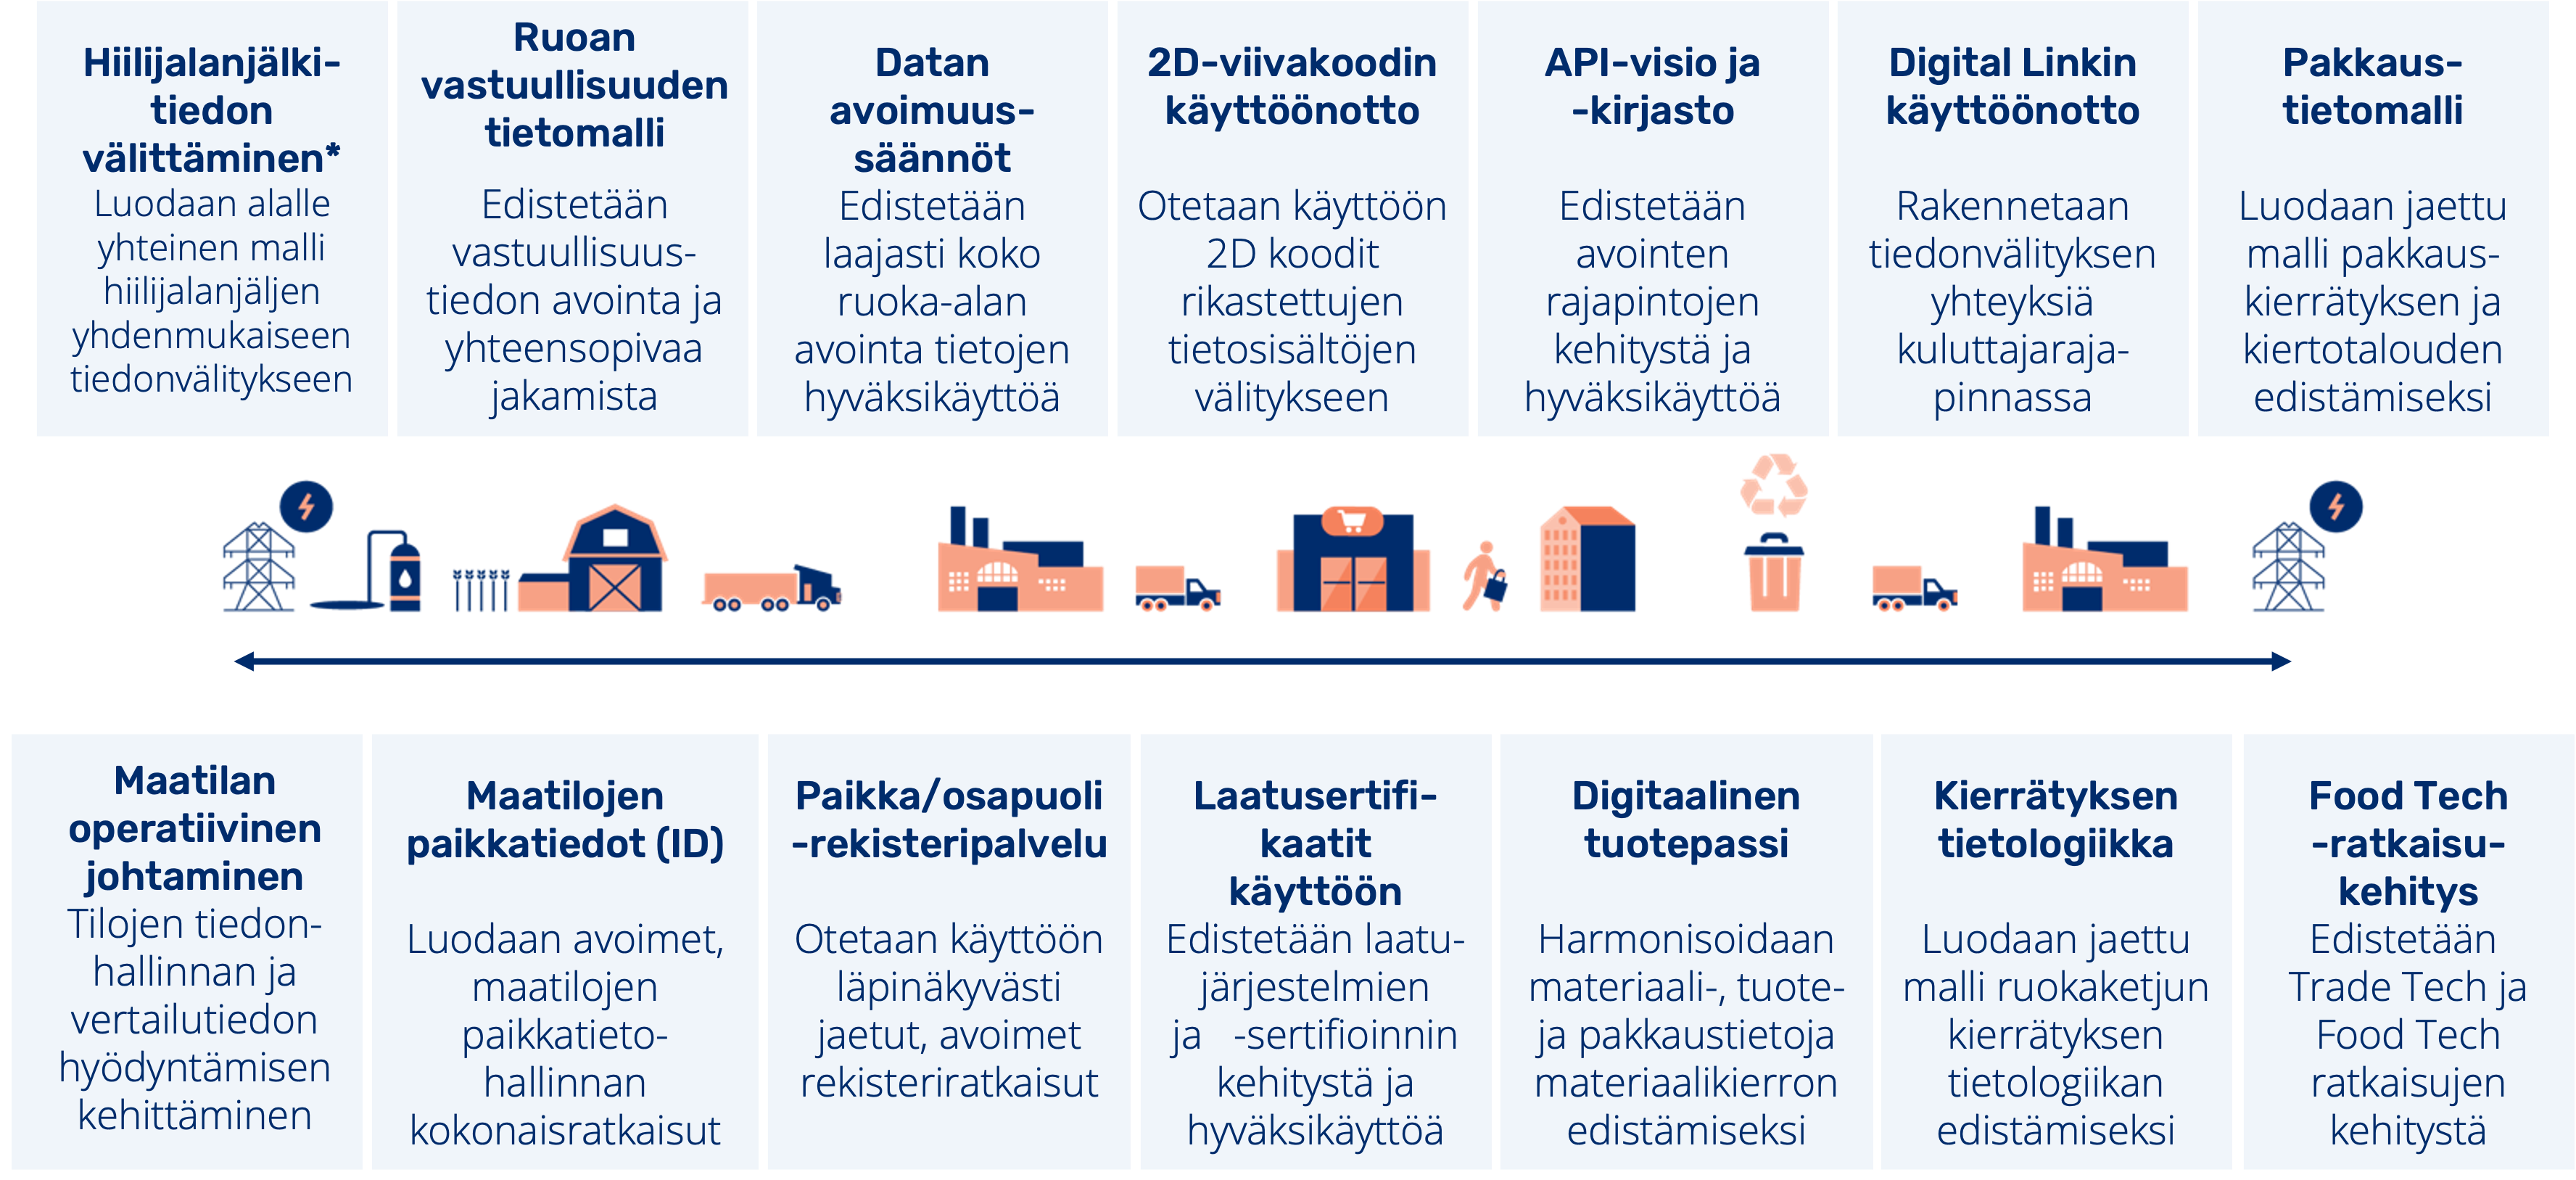 Food Data Finlandin tunnistetut kehitysteemat